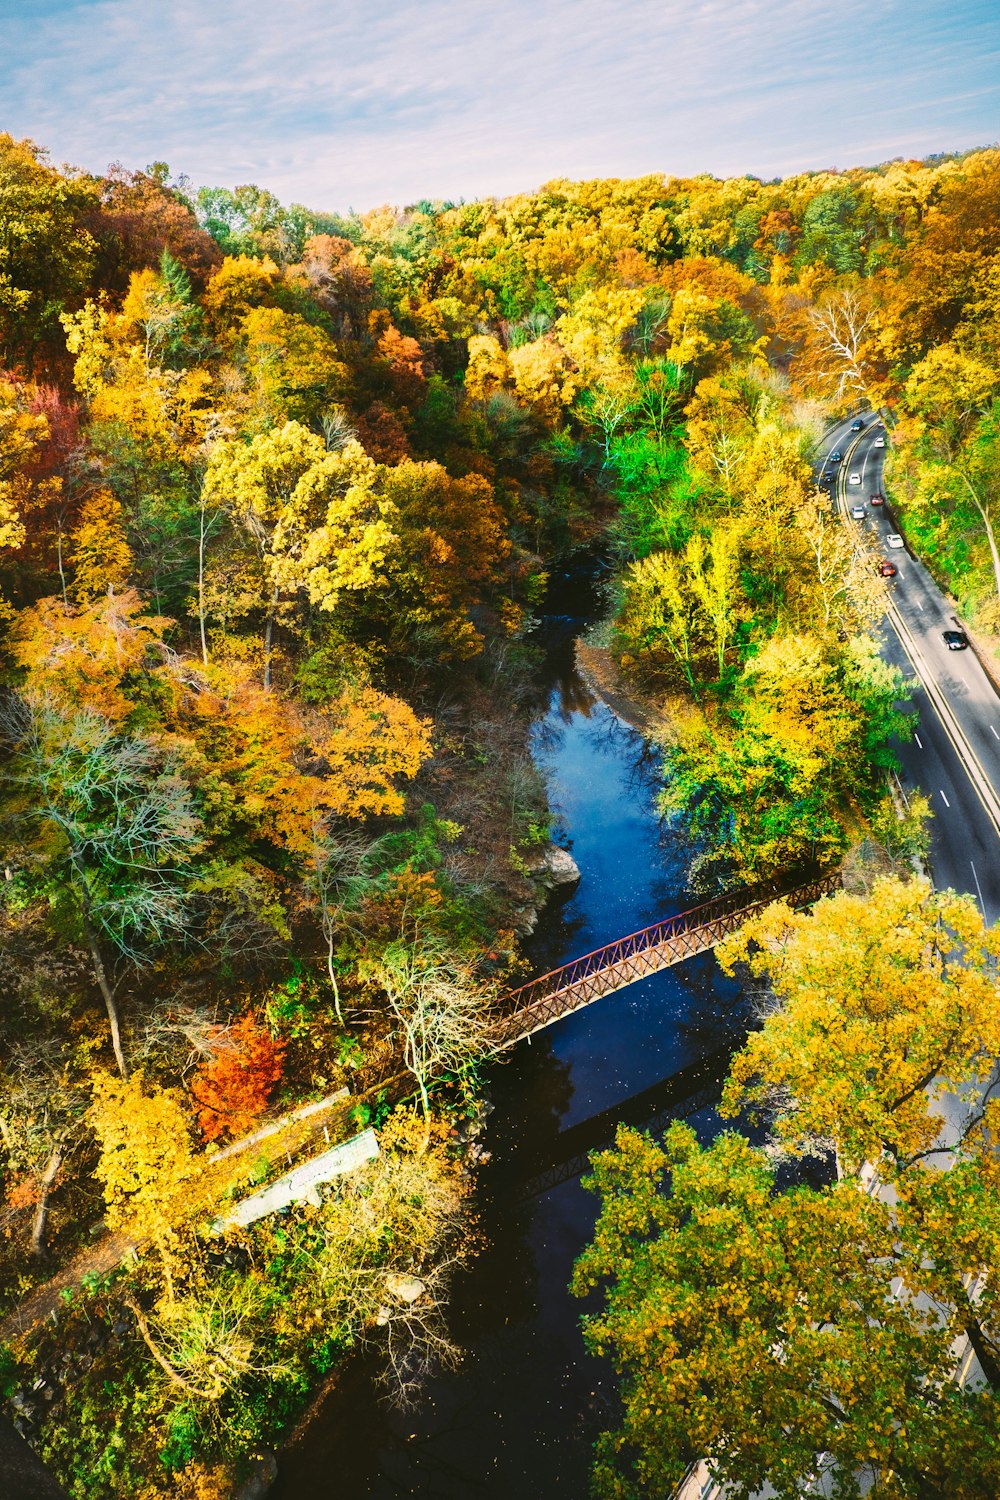 Photographie aérienne d’un pont en métal brun entouré d’arbres tandis que des voitures sur la route